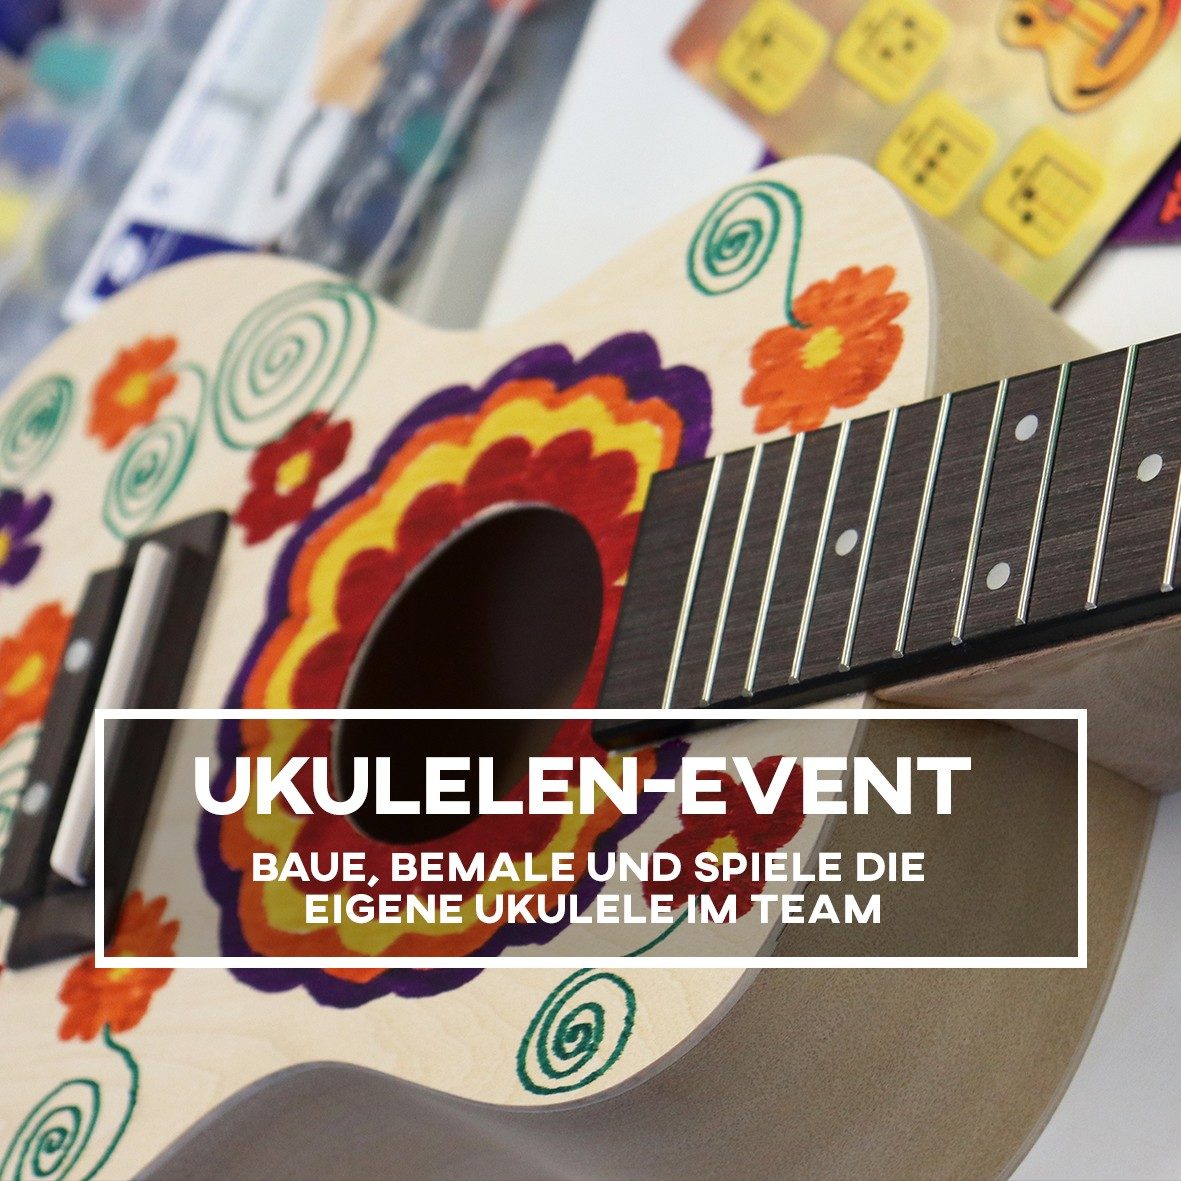 Ukulelen-Event mit dem Bau einer Ukulele und Workshop